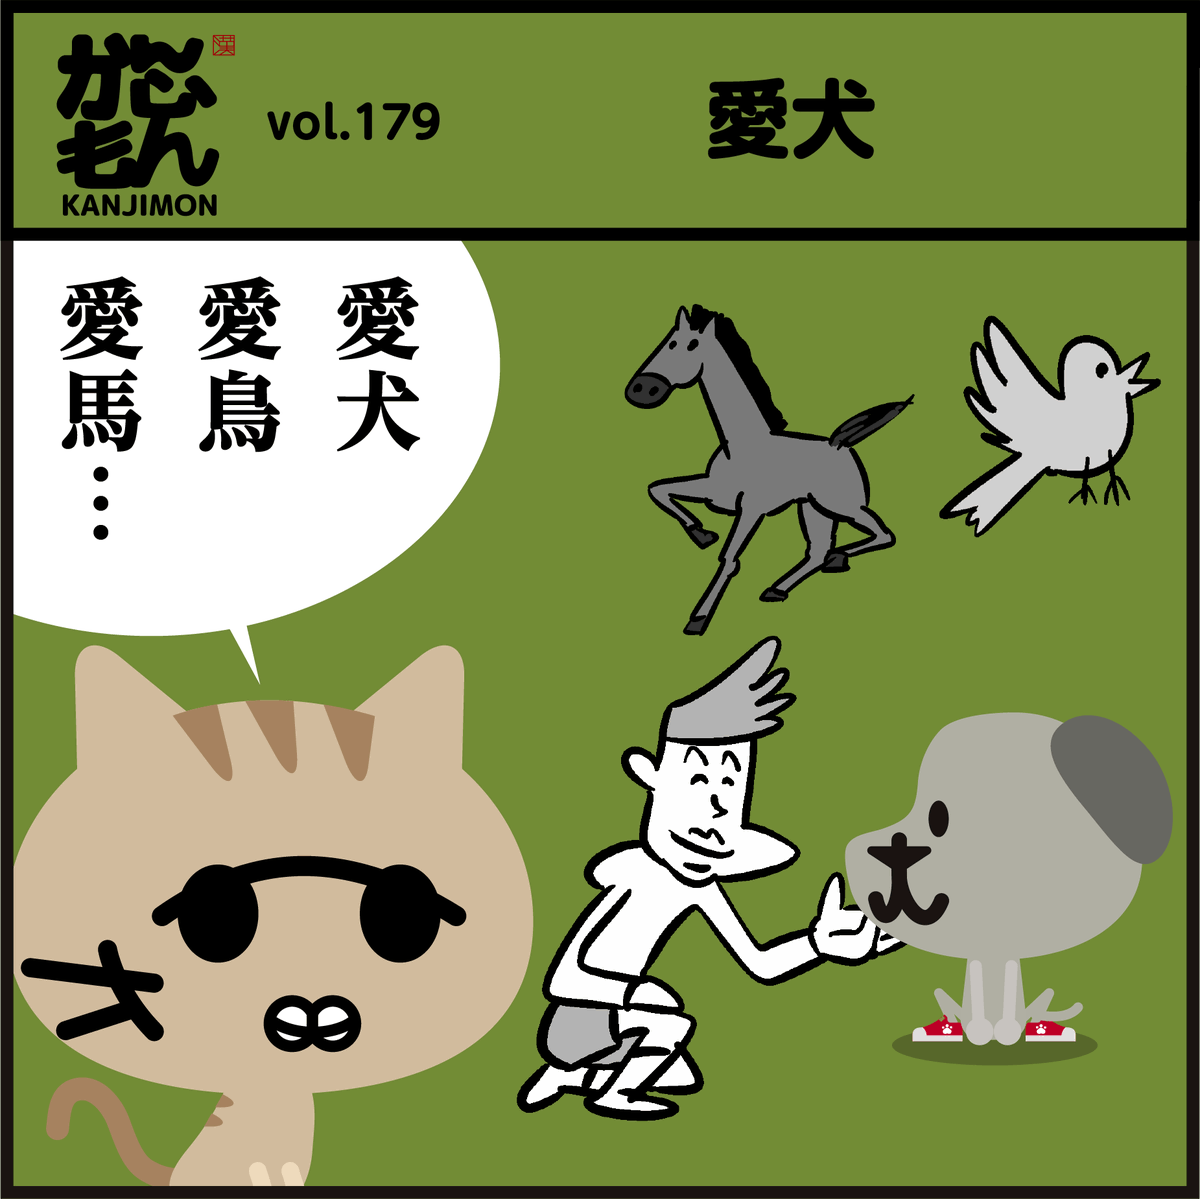 漢字【愛猫】読めますよね〜🐾
😺#猫の日 #イラスト #漫画 